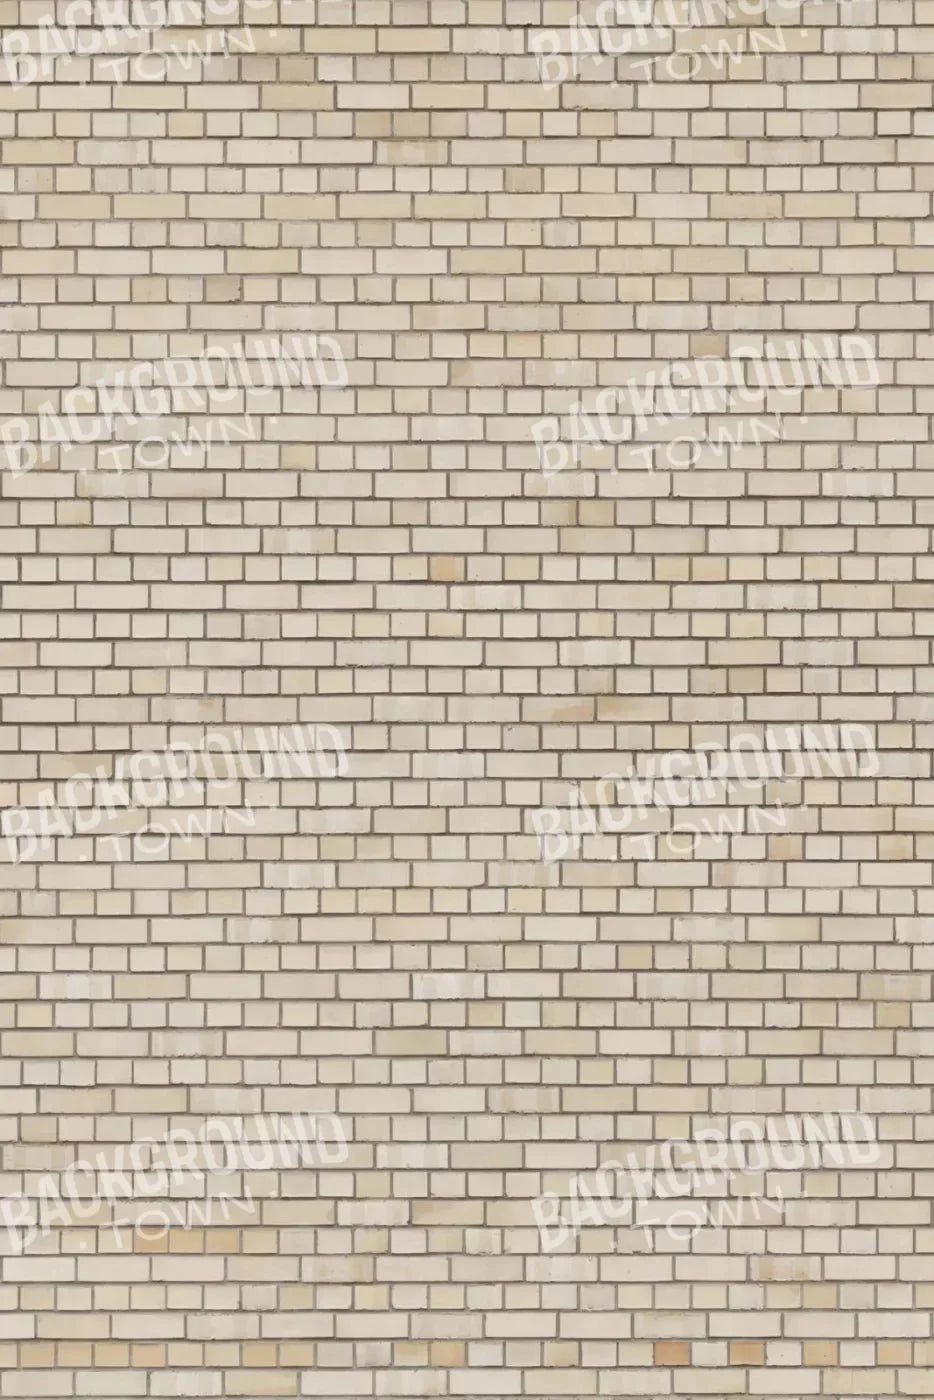 Brickwork Rubbermat Floor 4X5 ( 48 X 60 Inch )